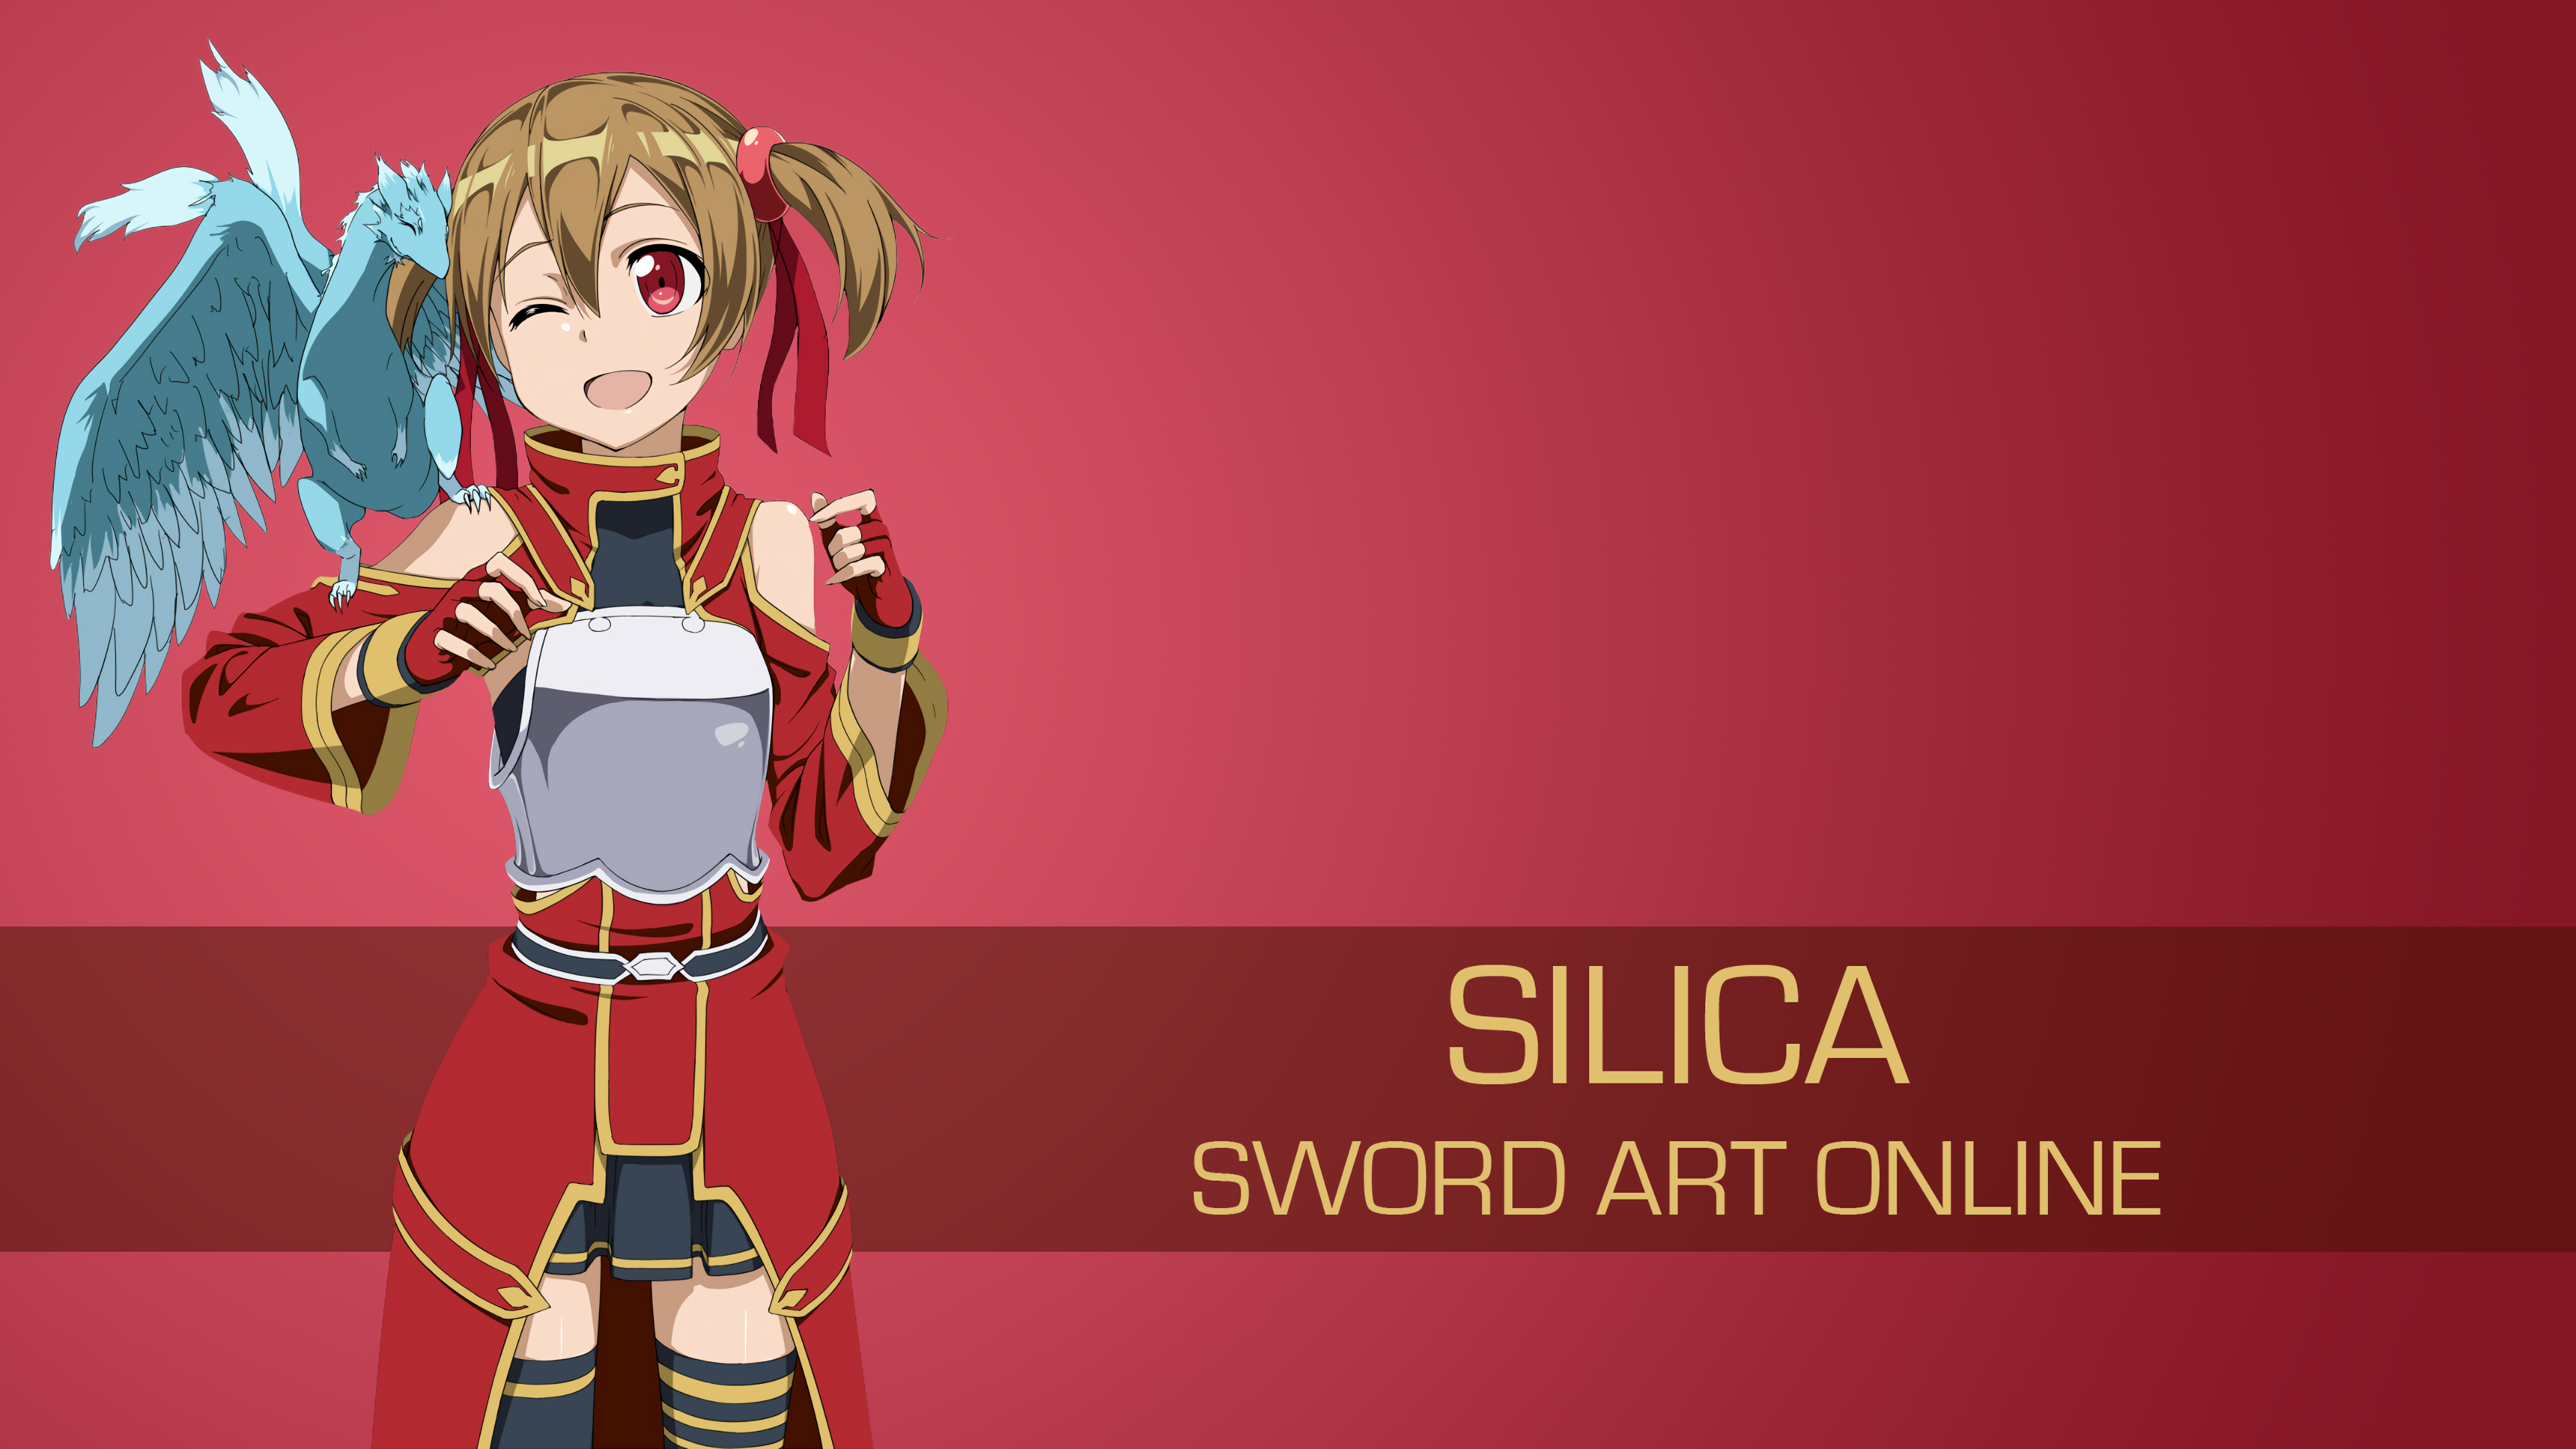 Pina Sword Art Online Silica Sword Art Online Sword Art Online 3840x2160